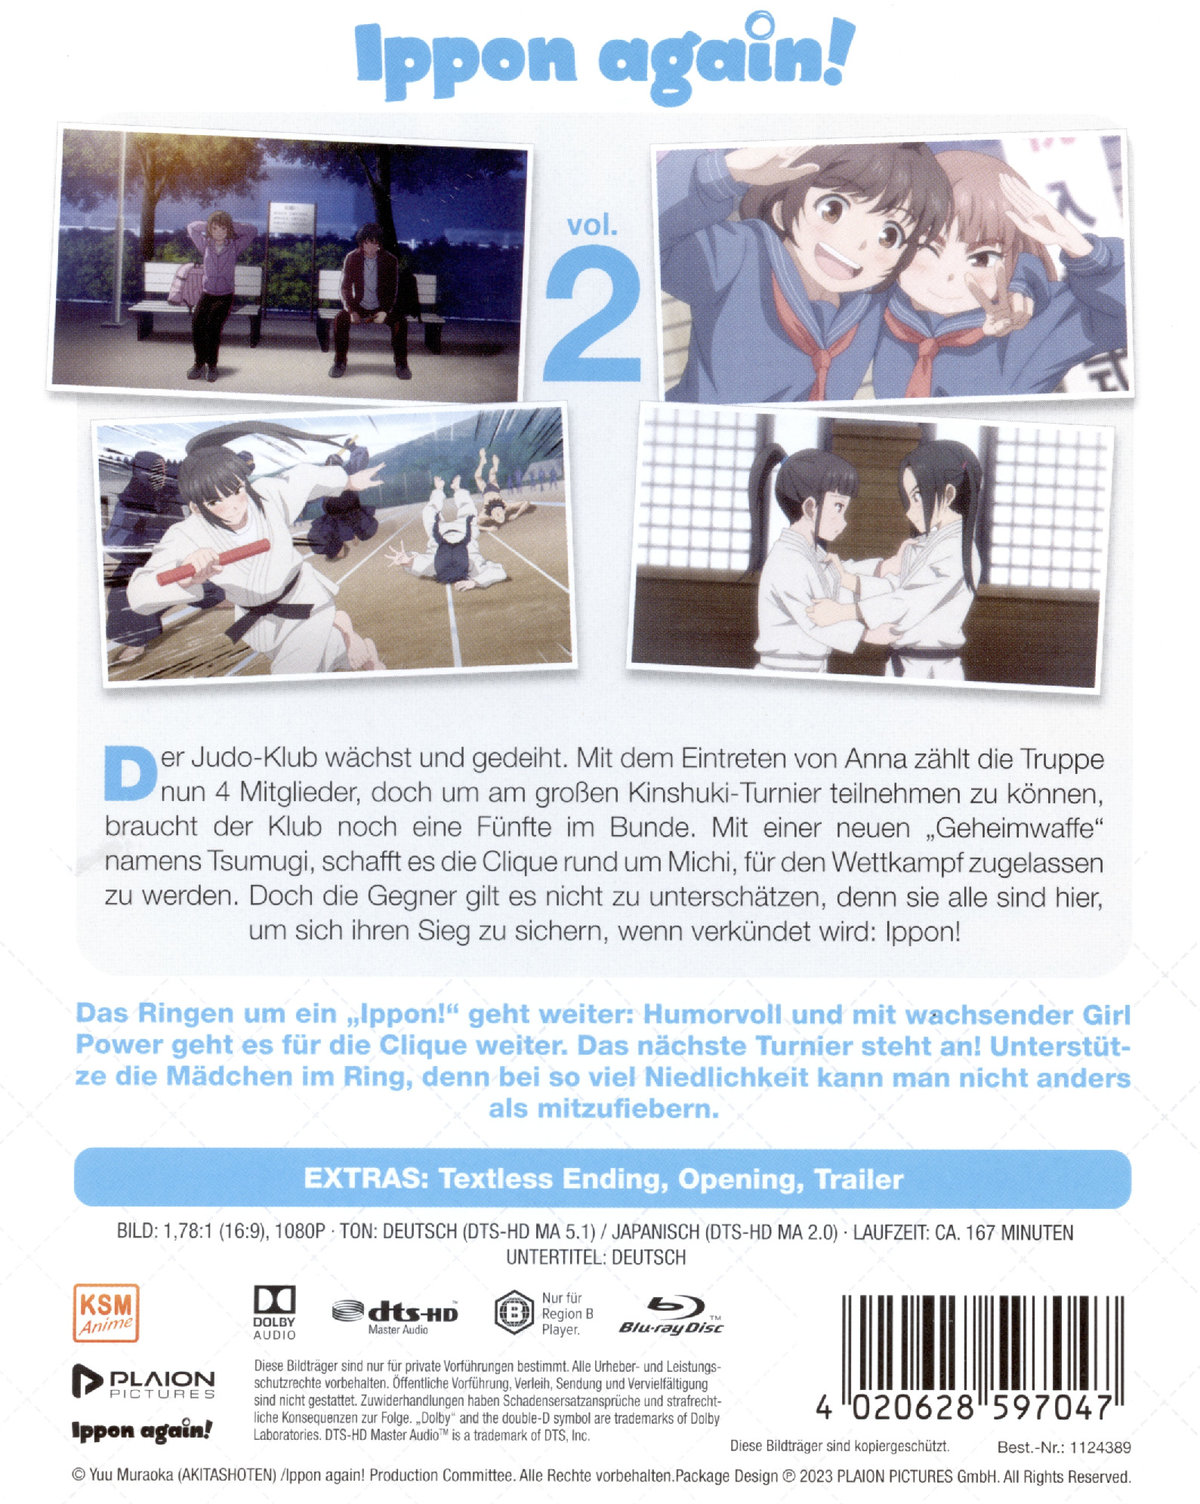 Ippon Again!: Volume 2 (Ep. 7-13)  (Blu-ray Disc)